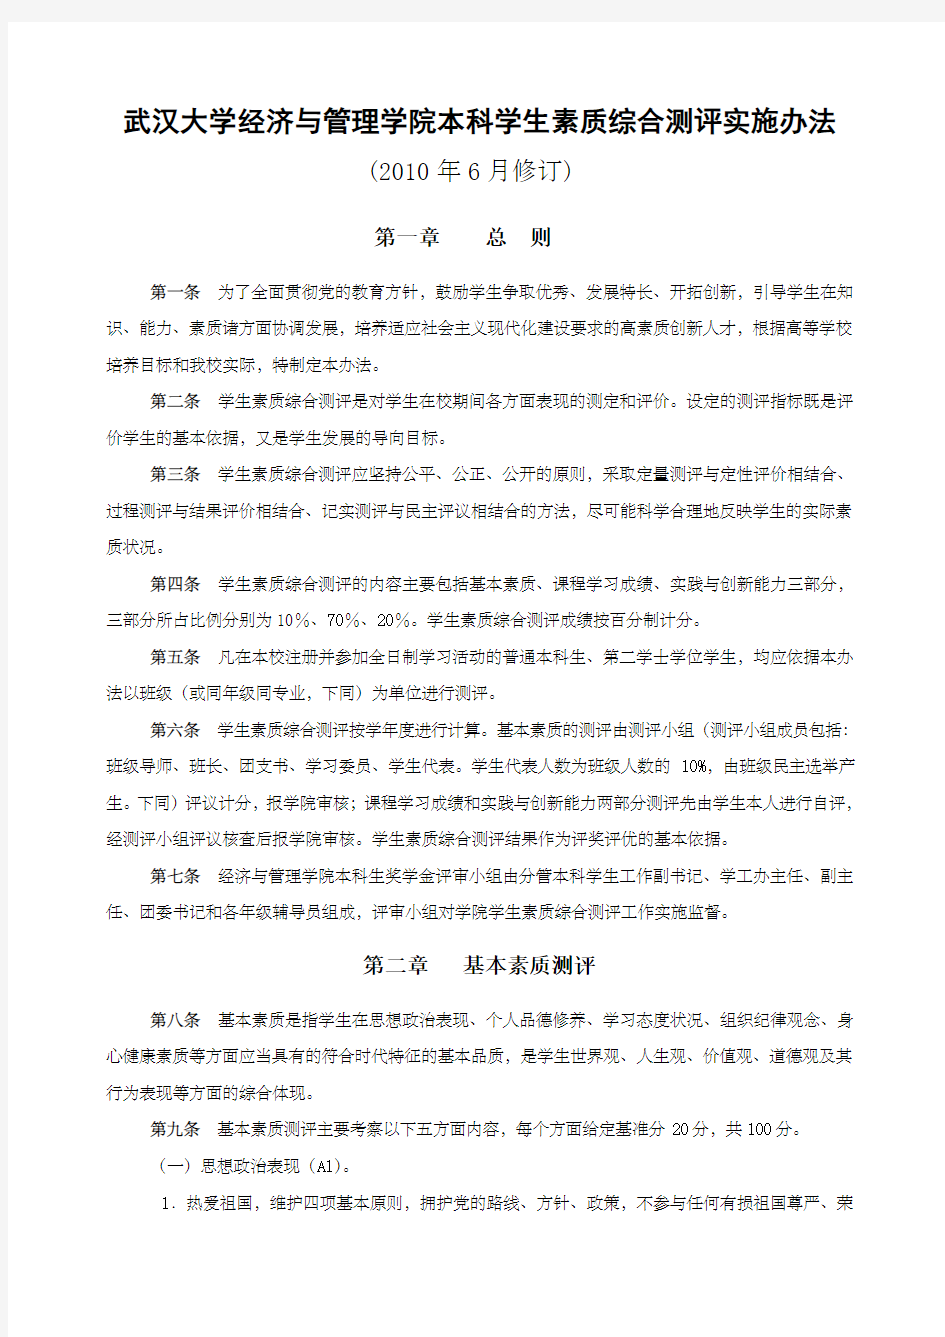 武汉大学经济与管理学院本科学生素质综合测评实施办法